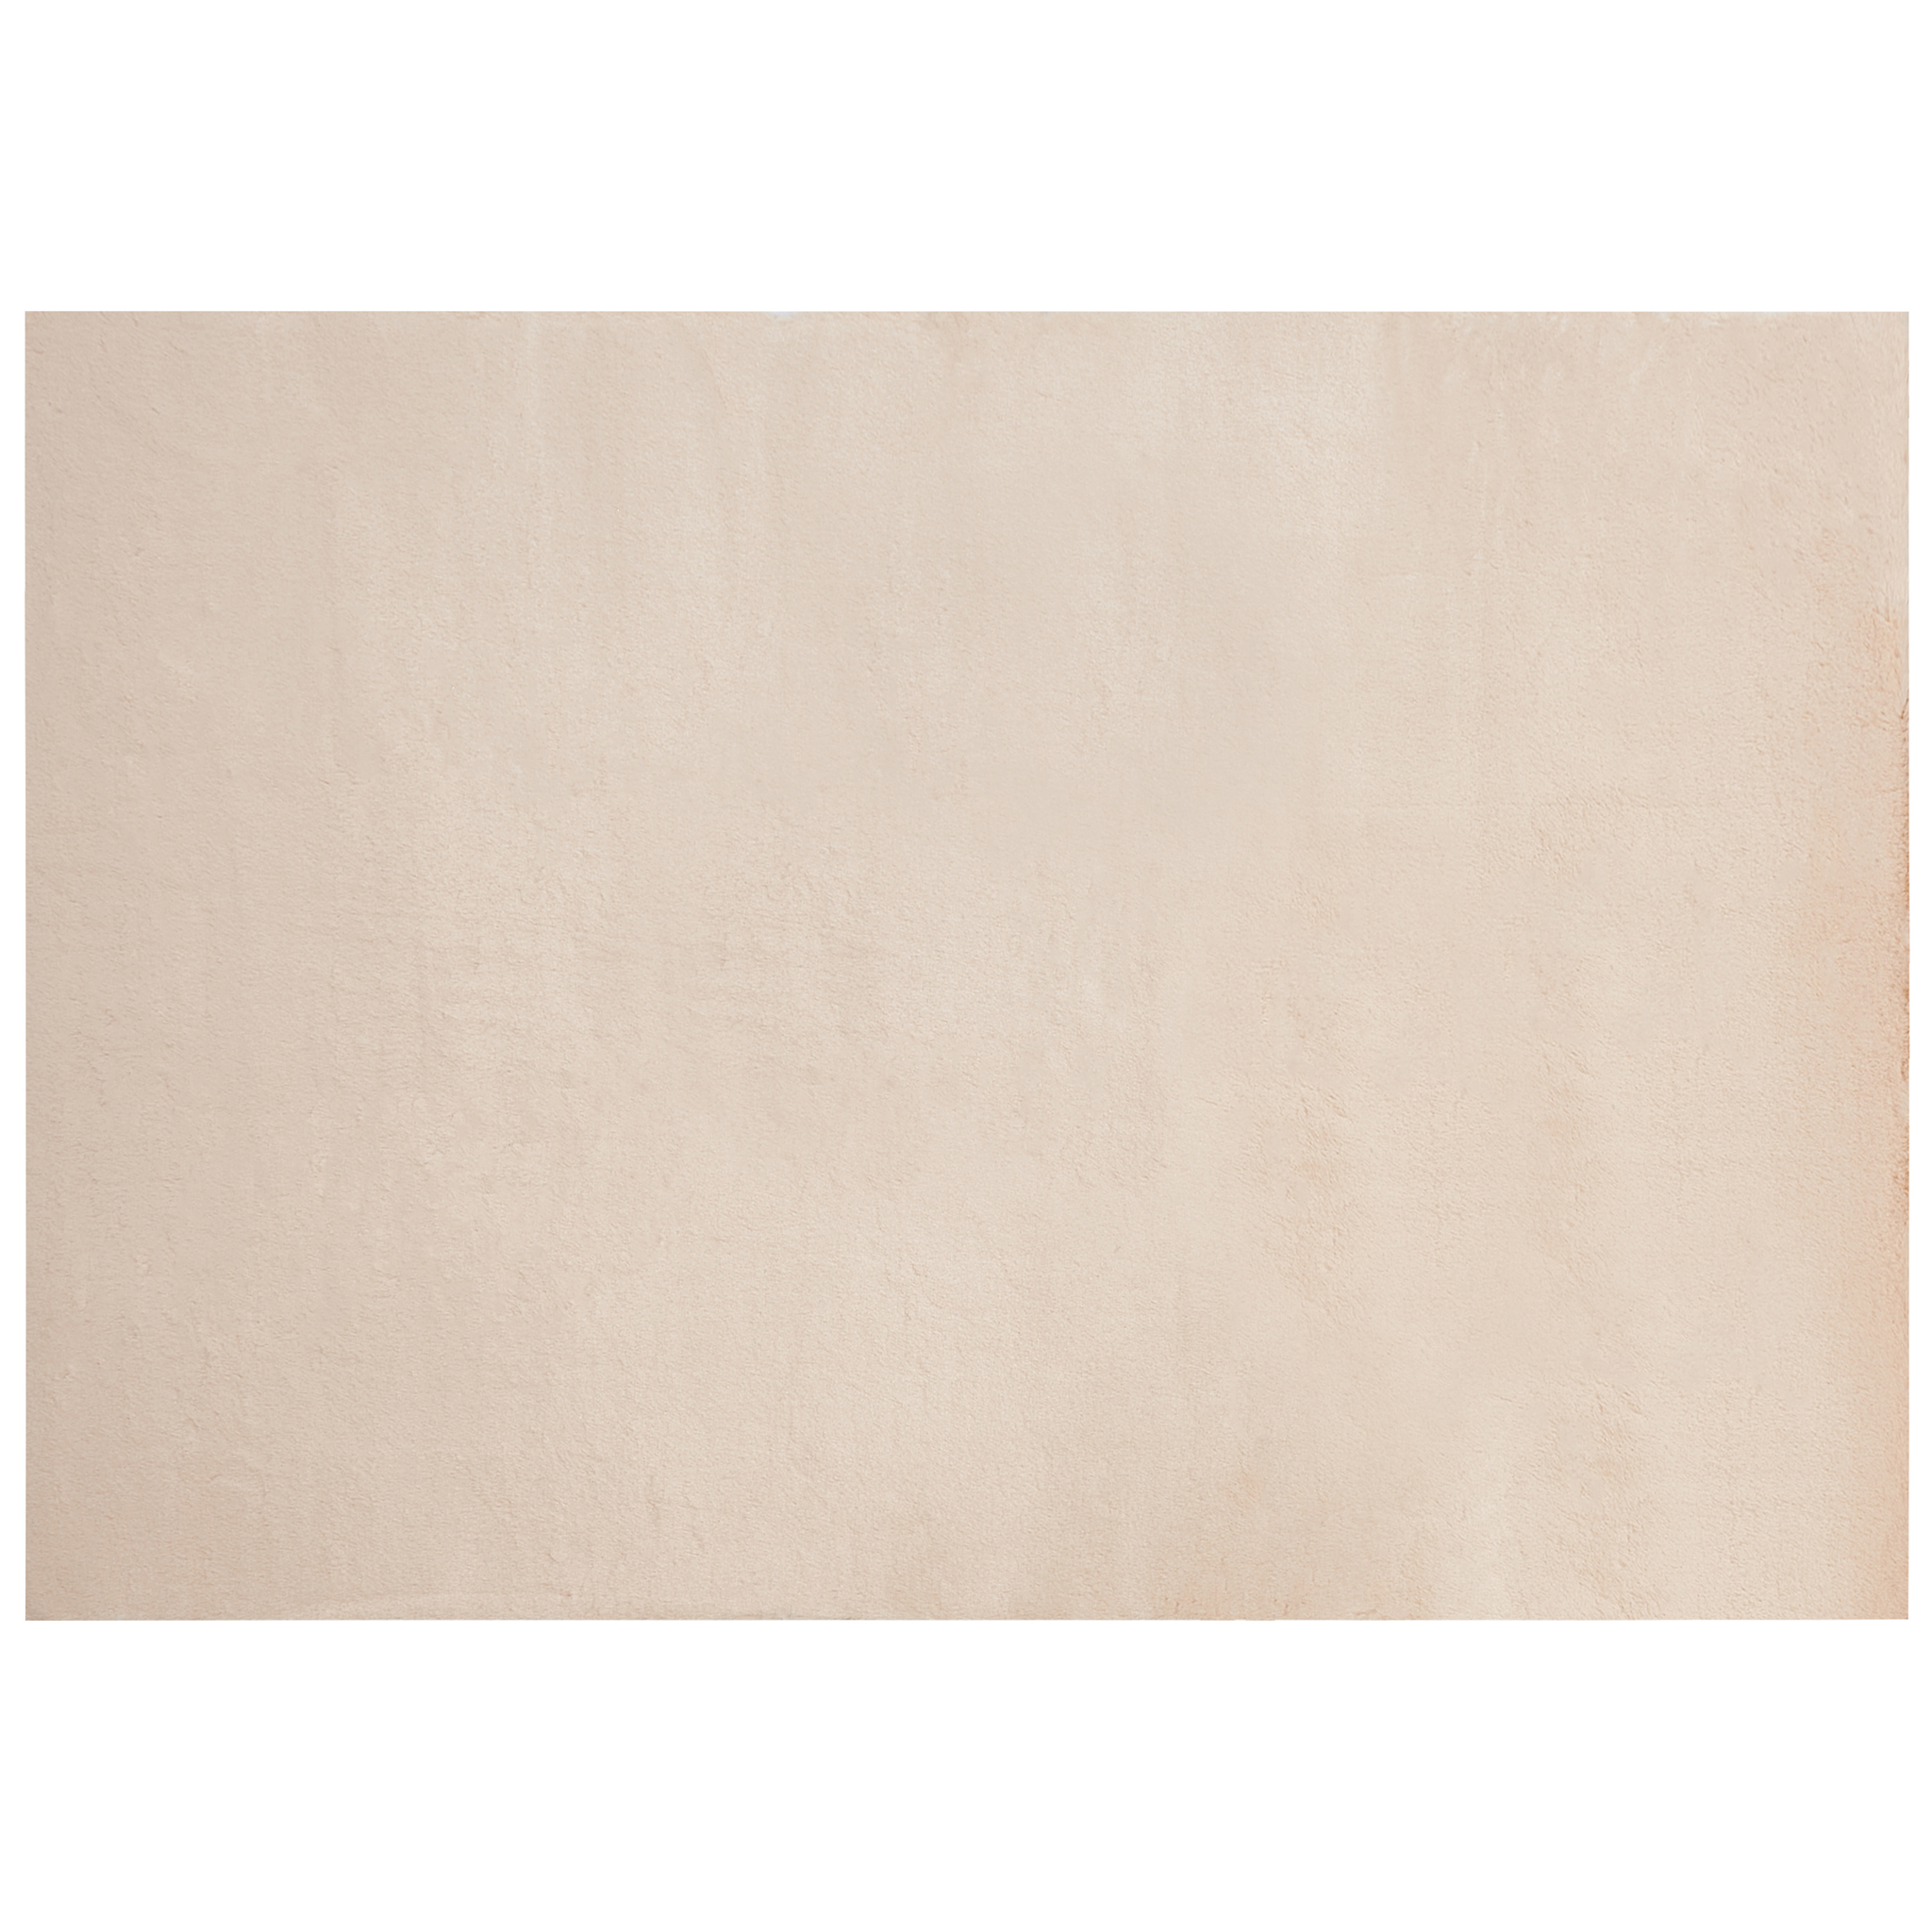 BELIANI Beliani MIRPUR - Shaggy vloerkleed - Beige - 160 x 230 cm - Polyester